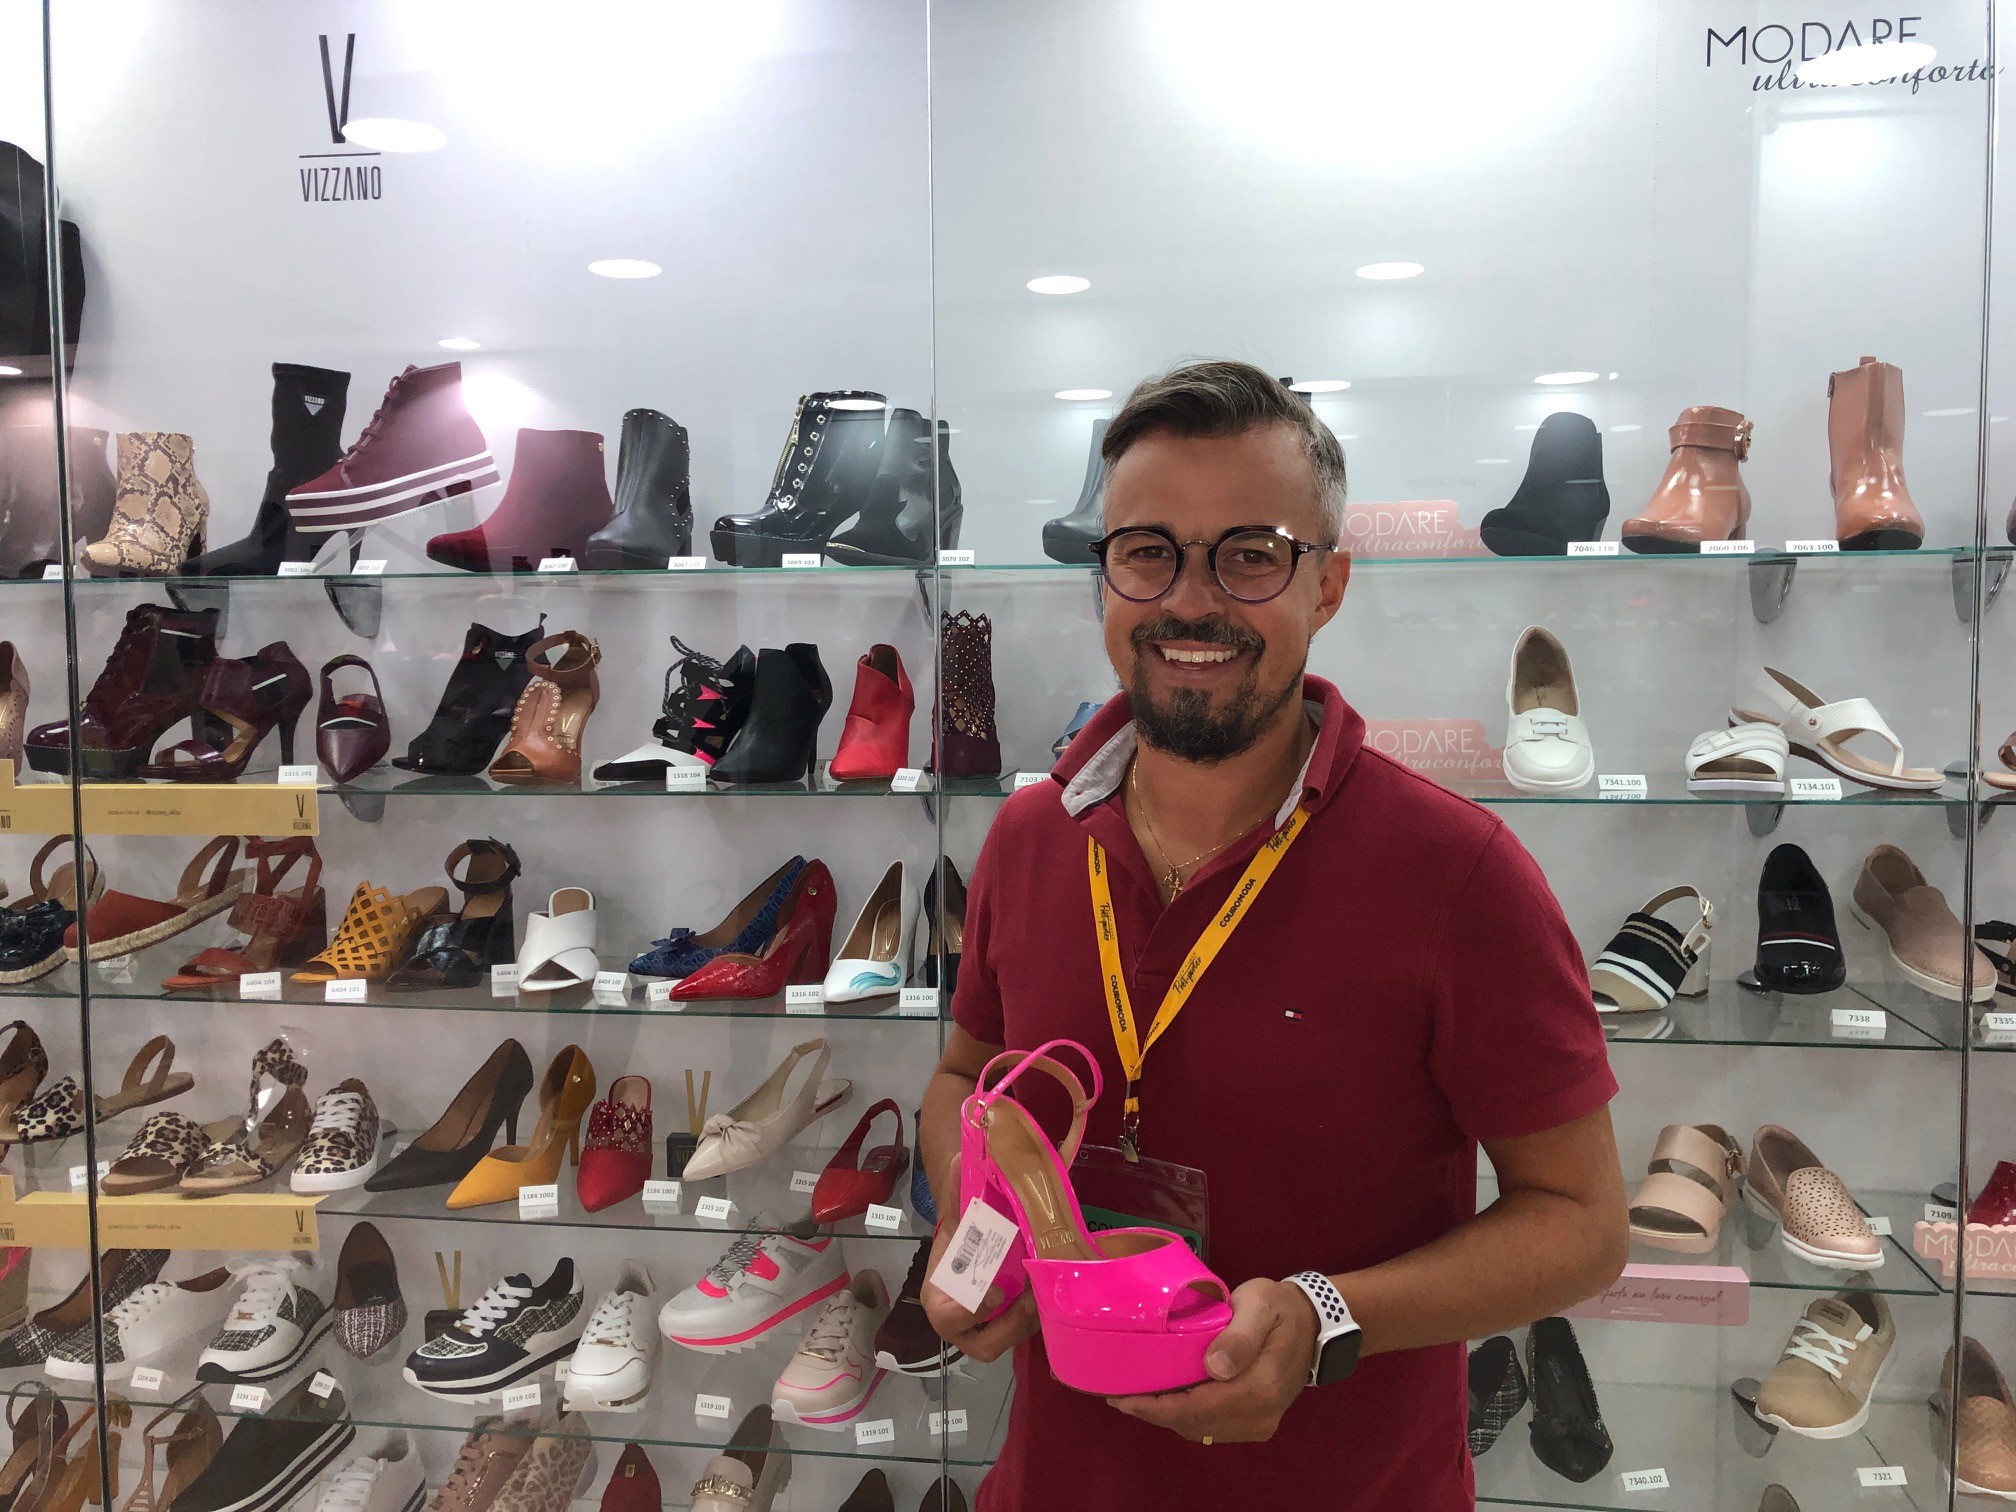 brazilian shoe companies